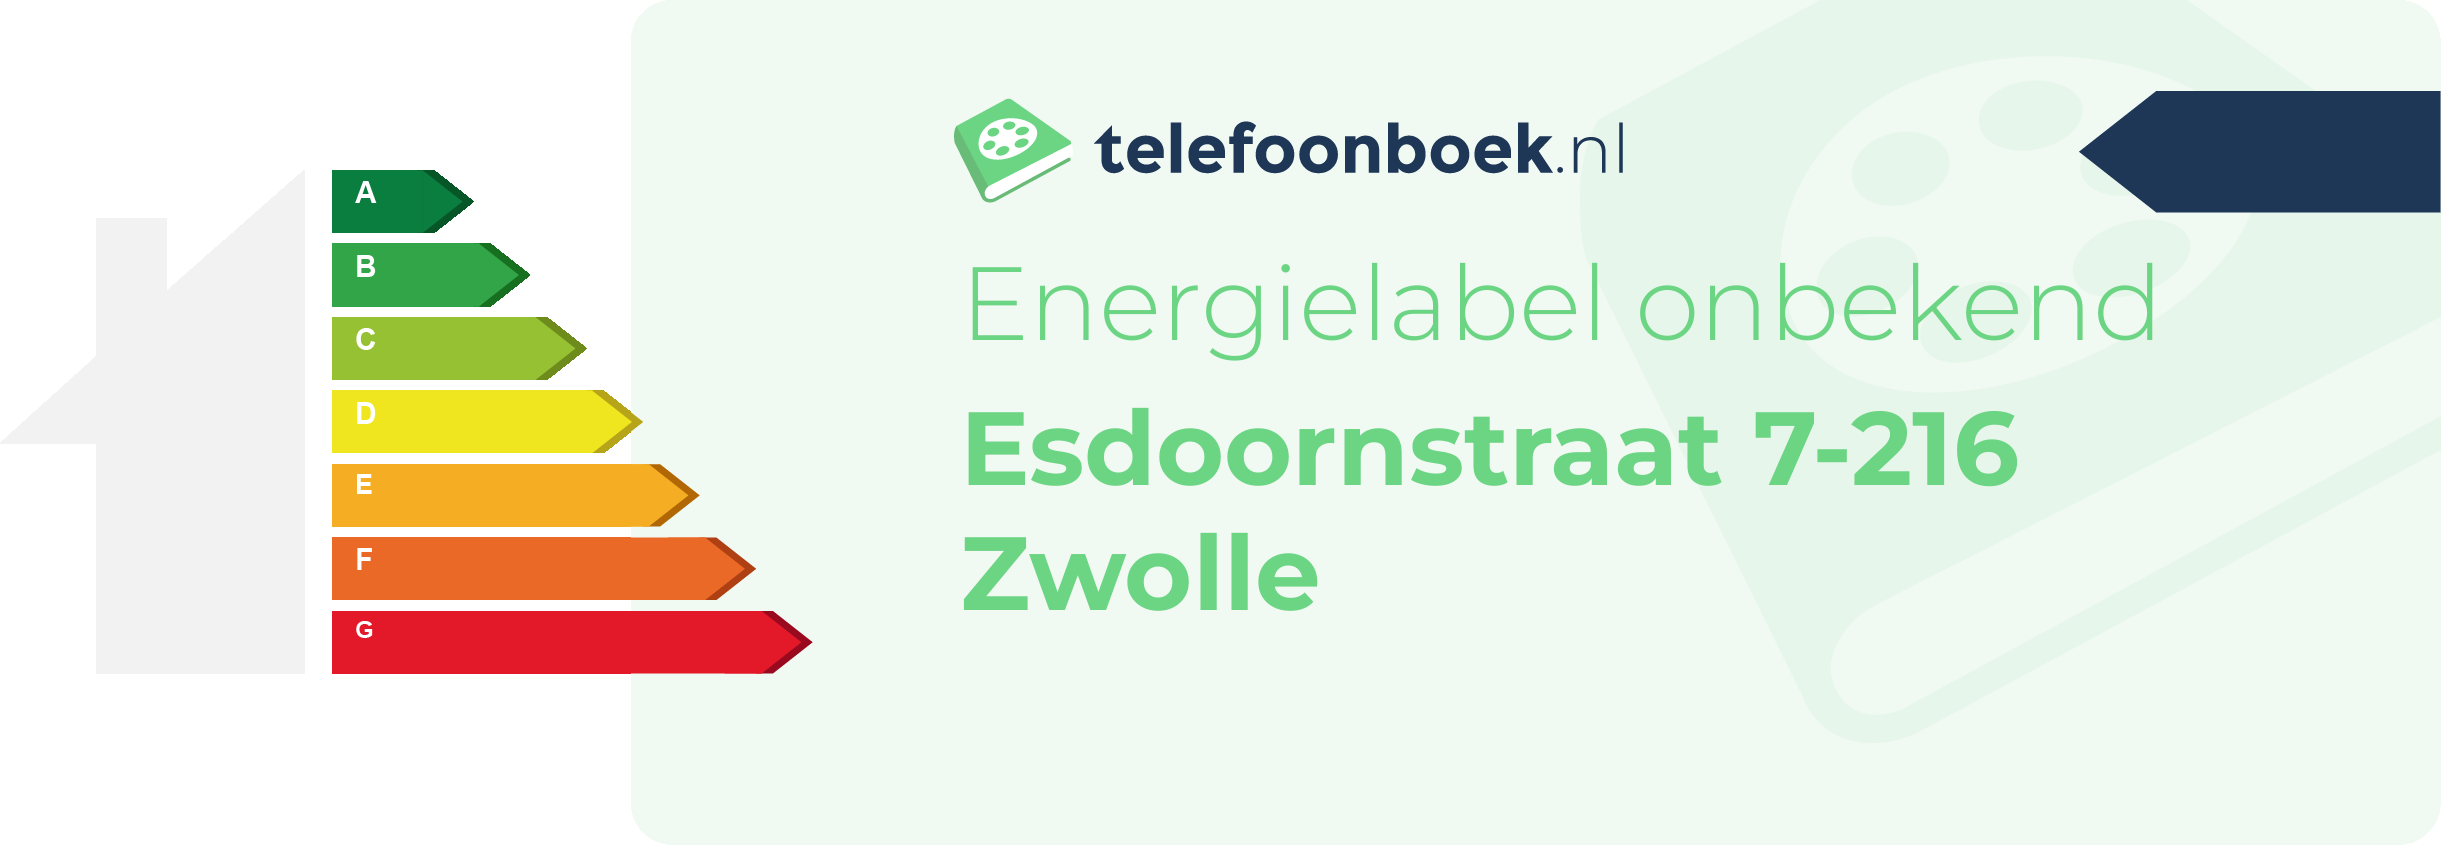 Energielabel Esdoornstraat 7-216 Zwolle